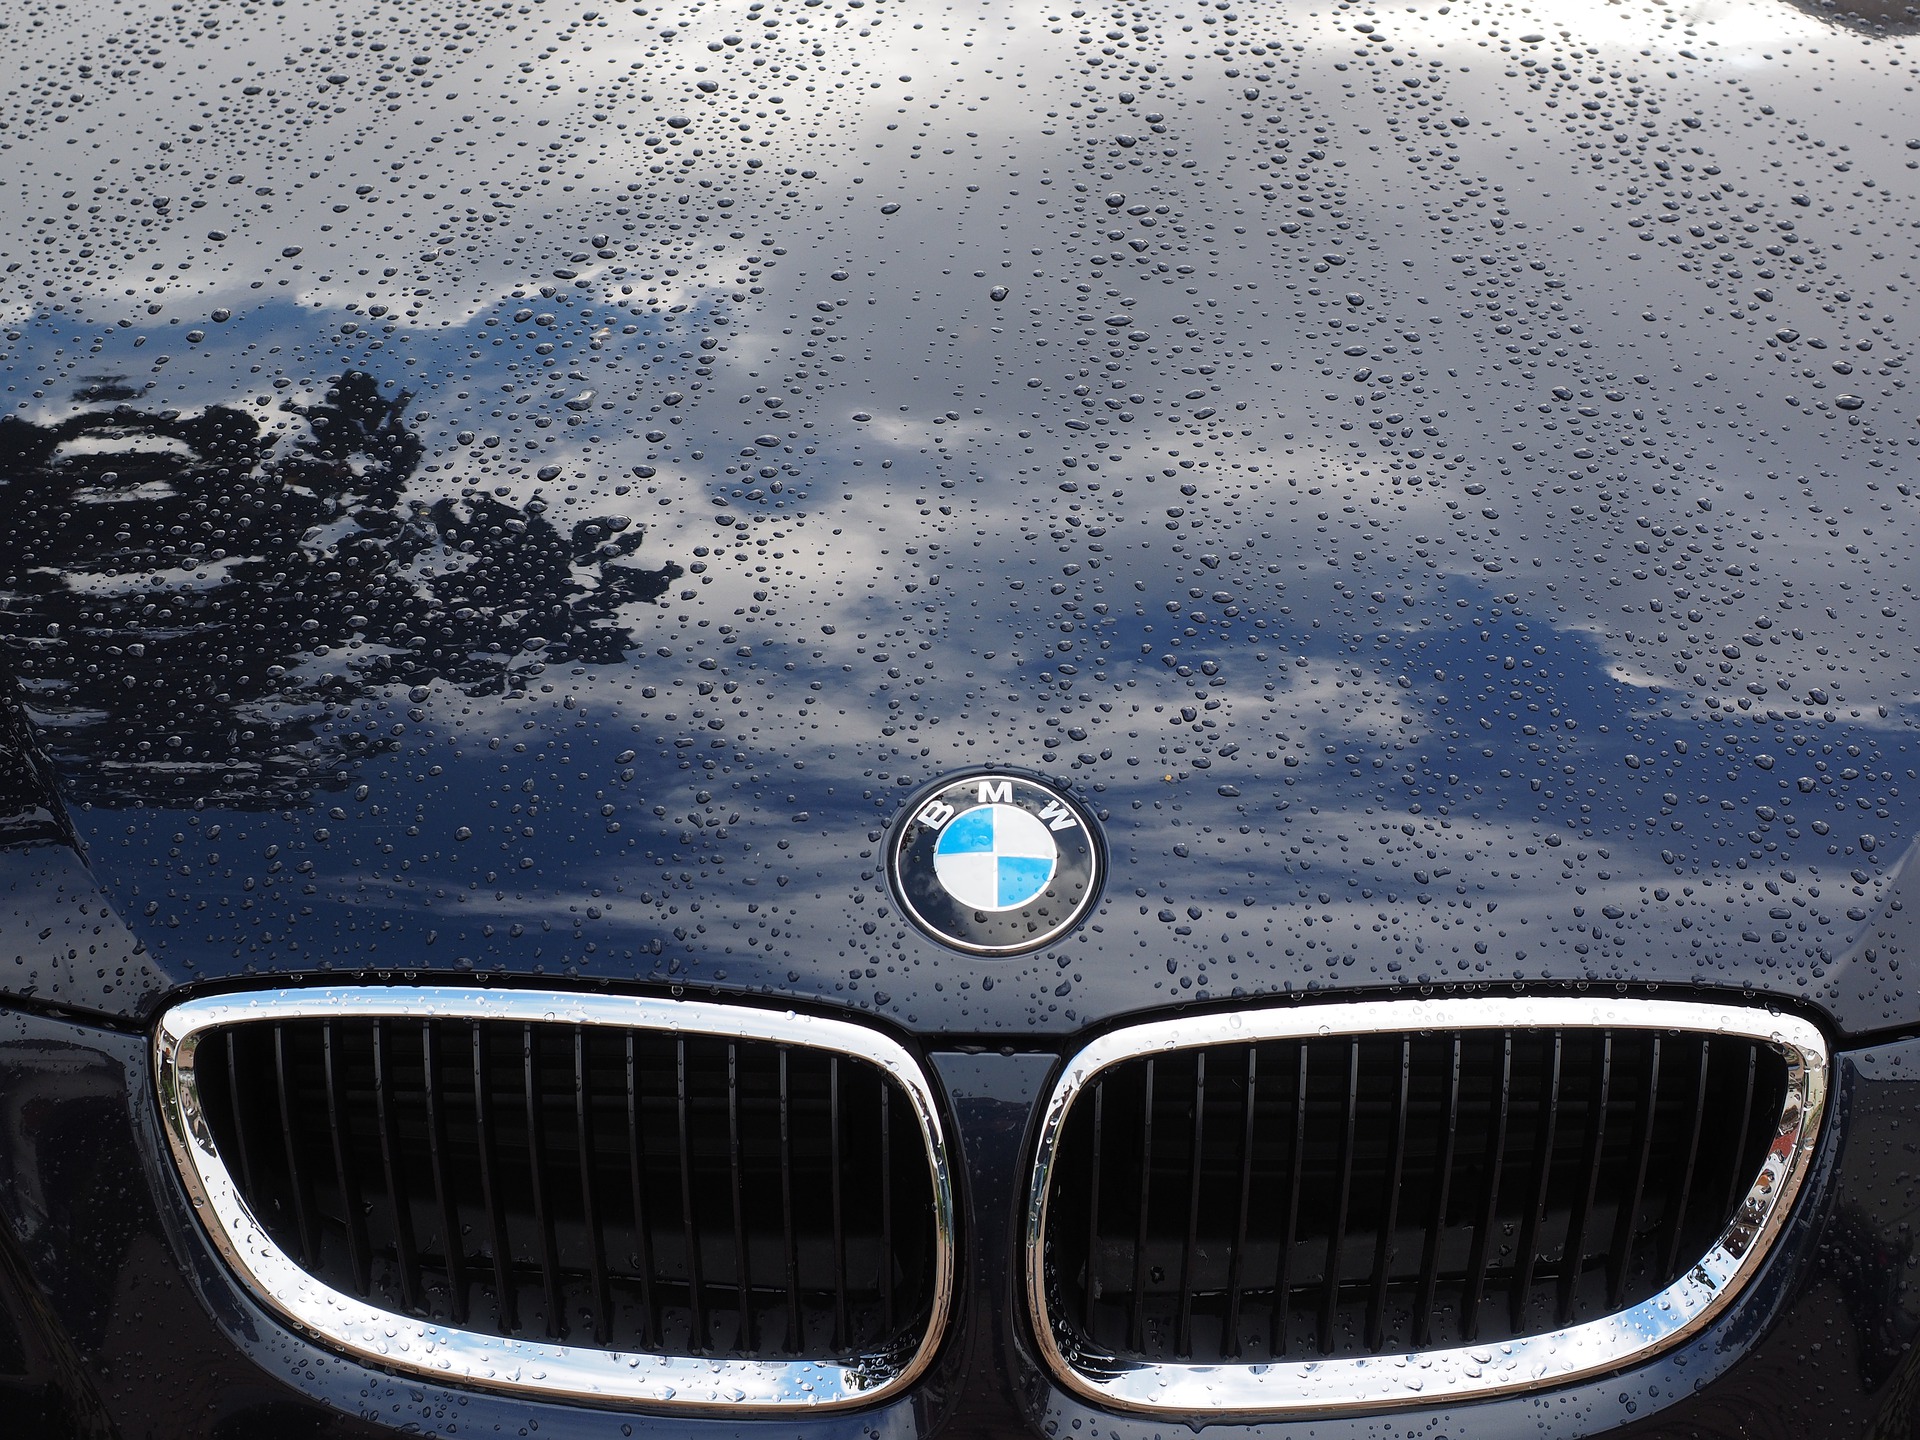 Liikluskindlustuspetturid on pahatihti BMW-juhid FOTO: Pixabay